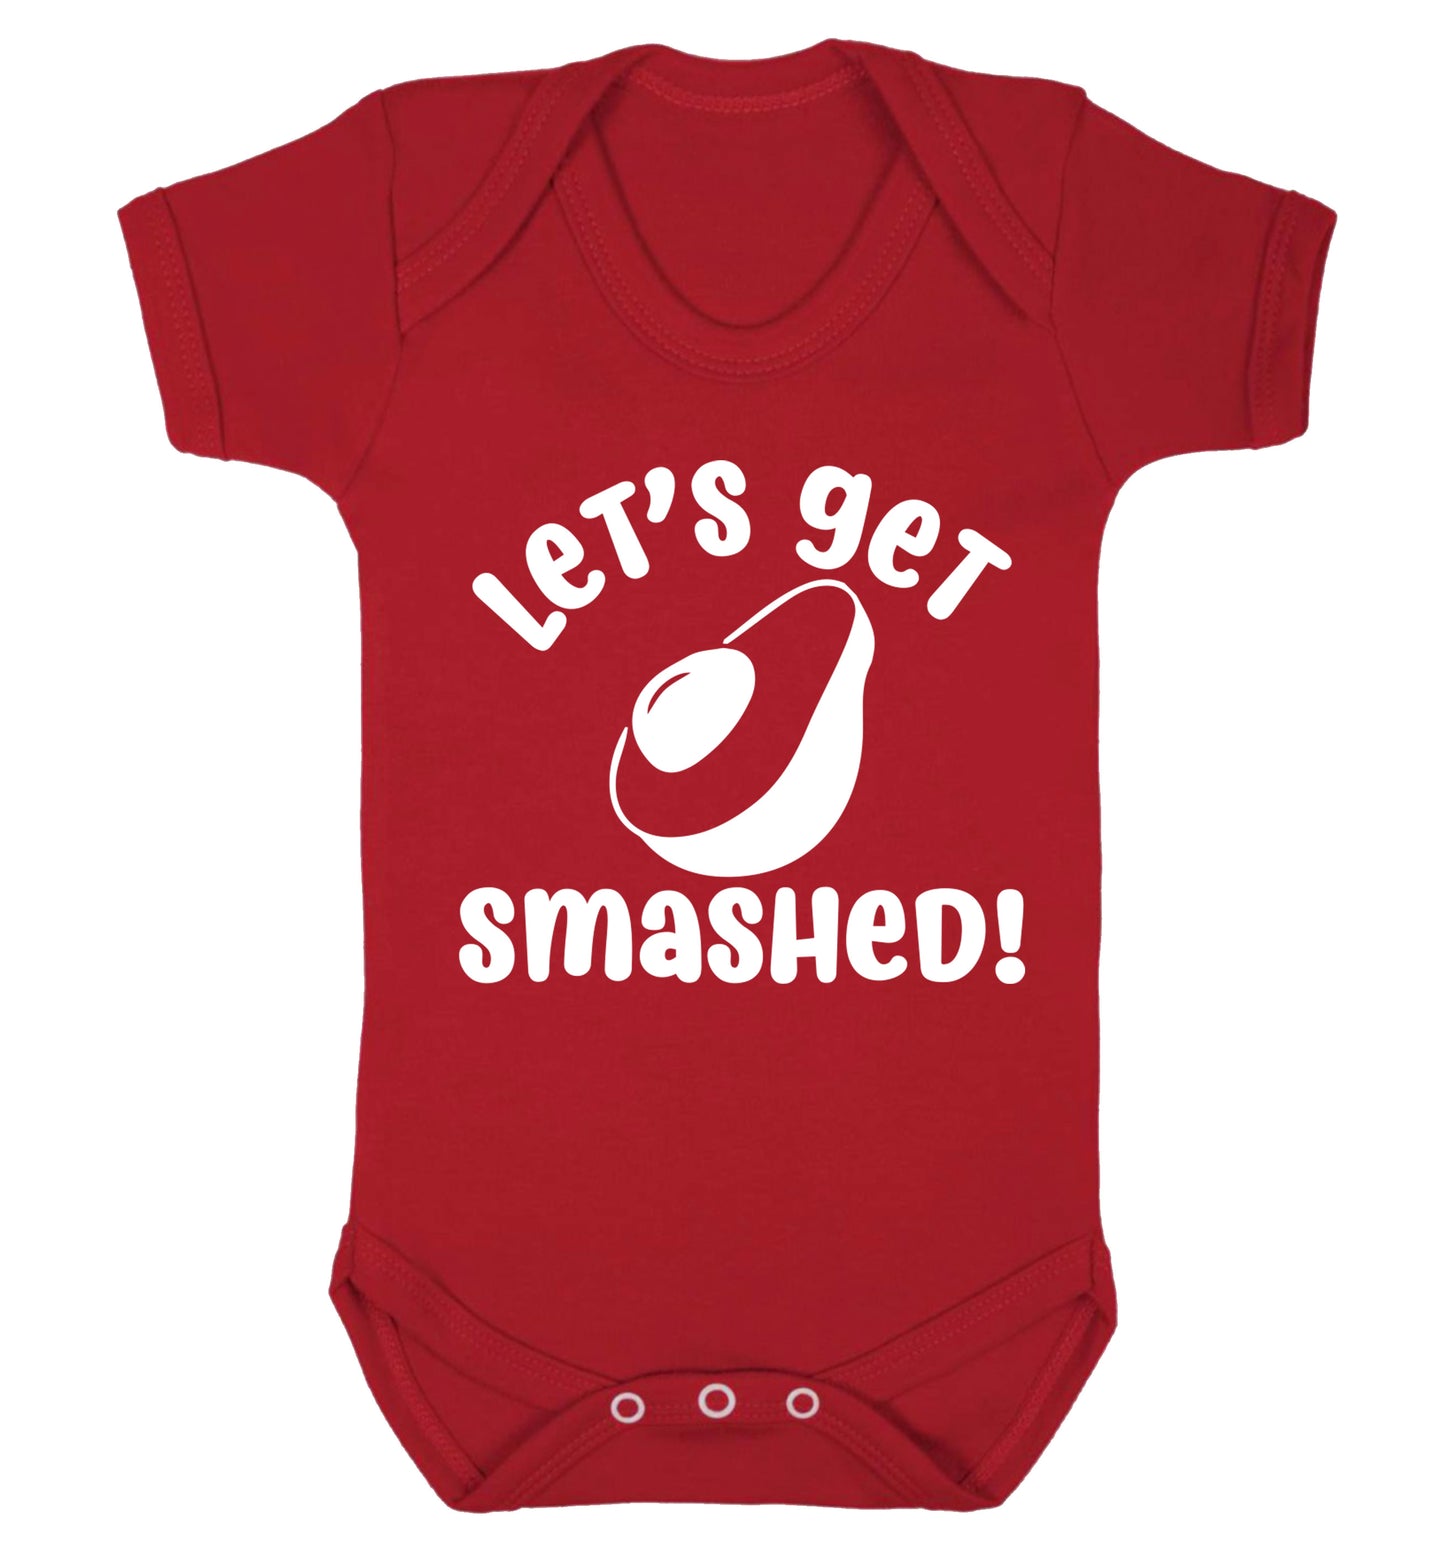 Let's get smashed Baby Vest red 18-24 months